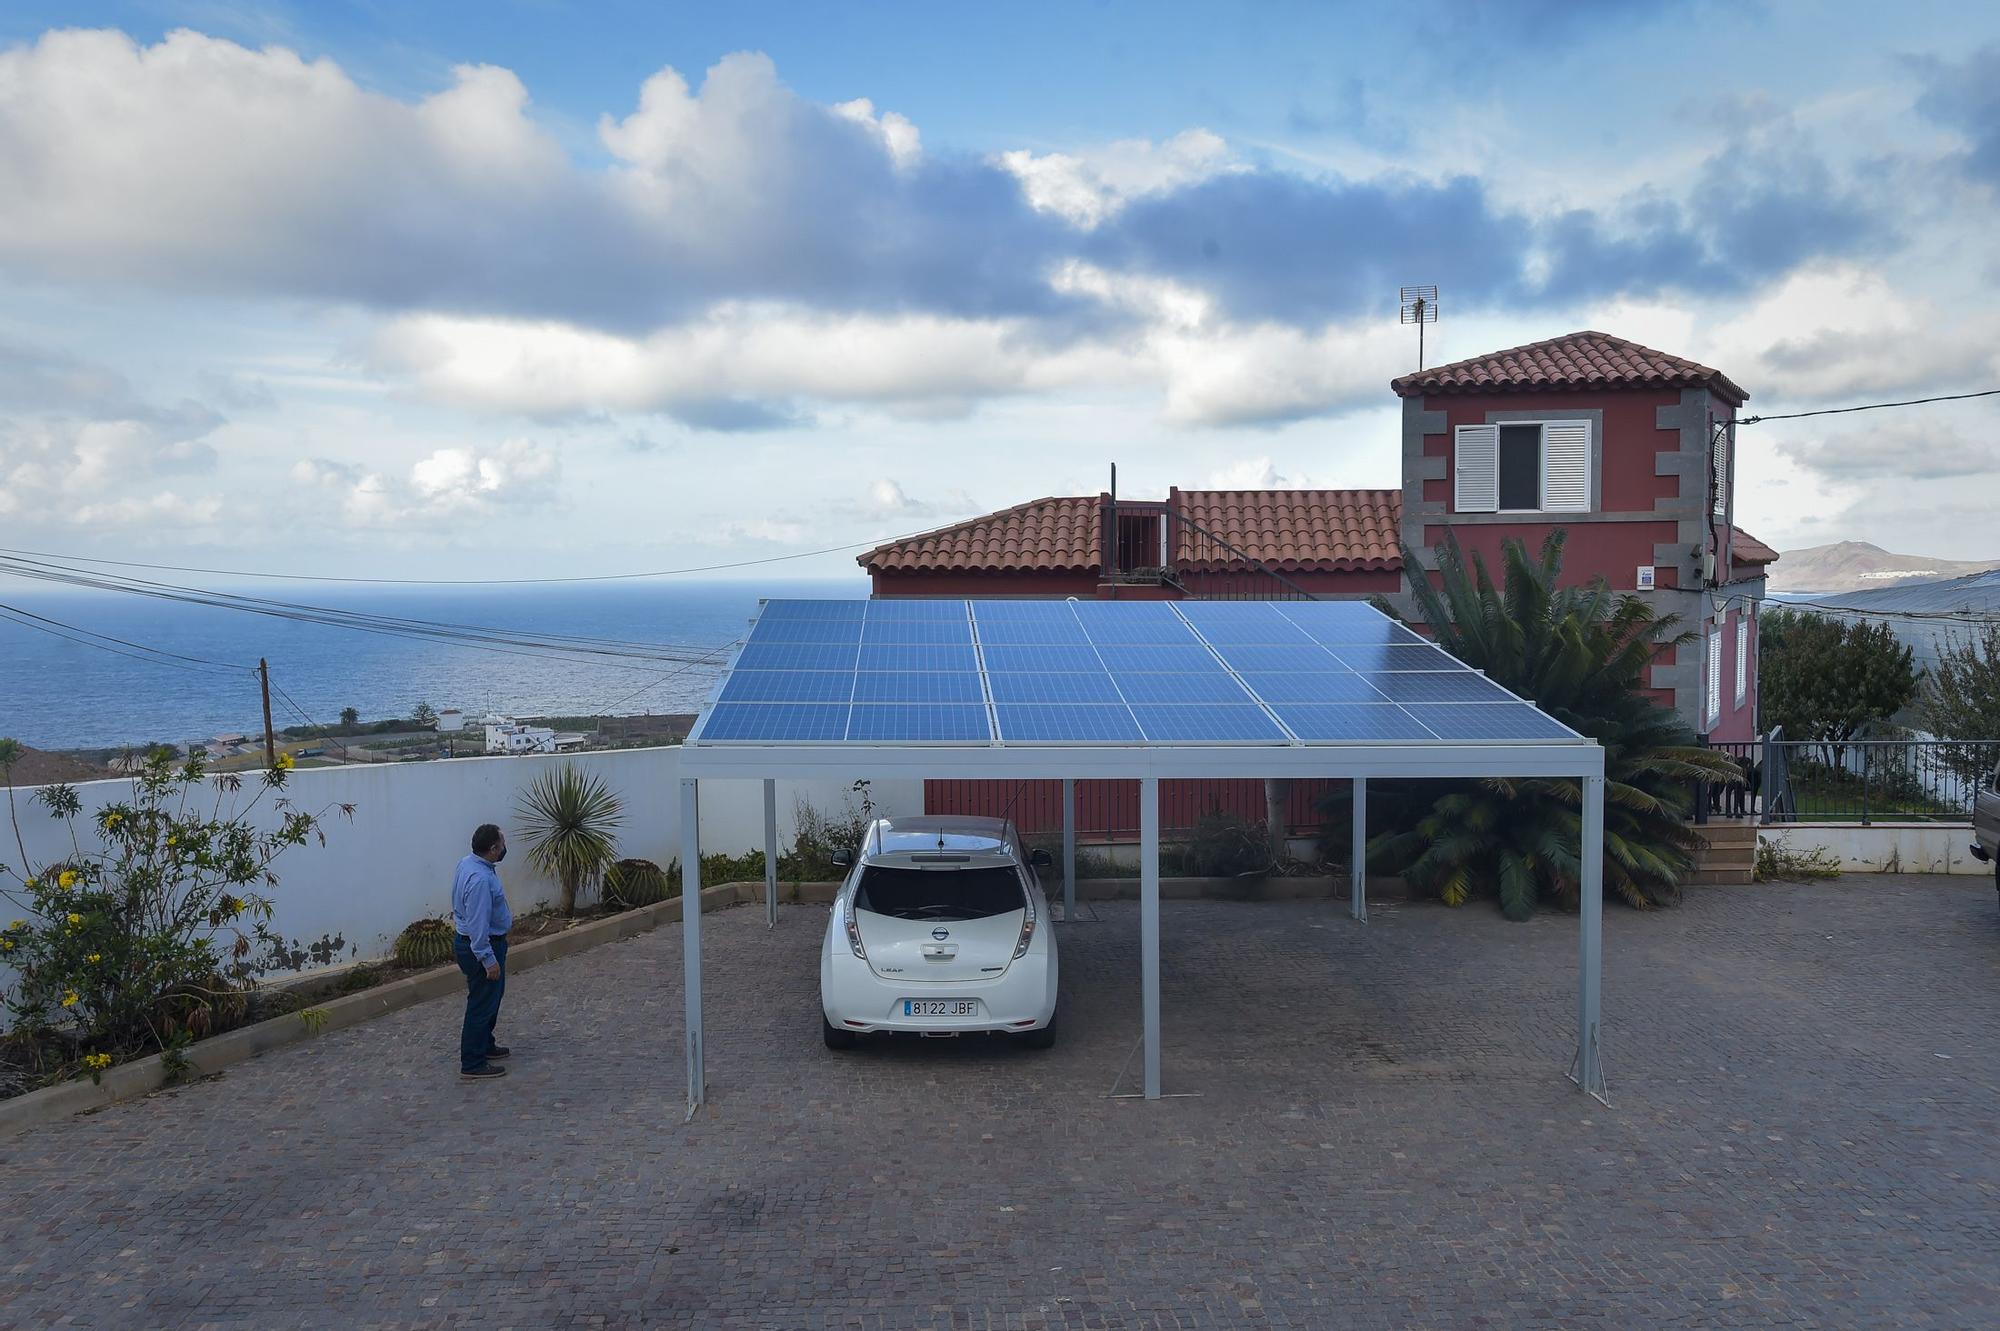 Instalación fotovoltaica para autoconsumo eléctrico en una vivienda del pueblo de Cardones (Arucas)